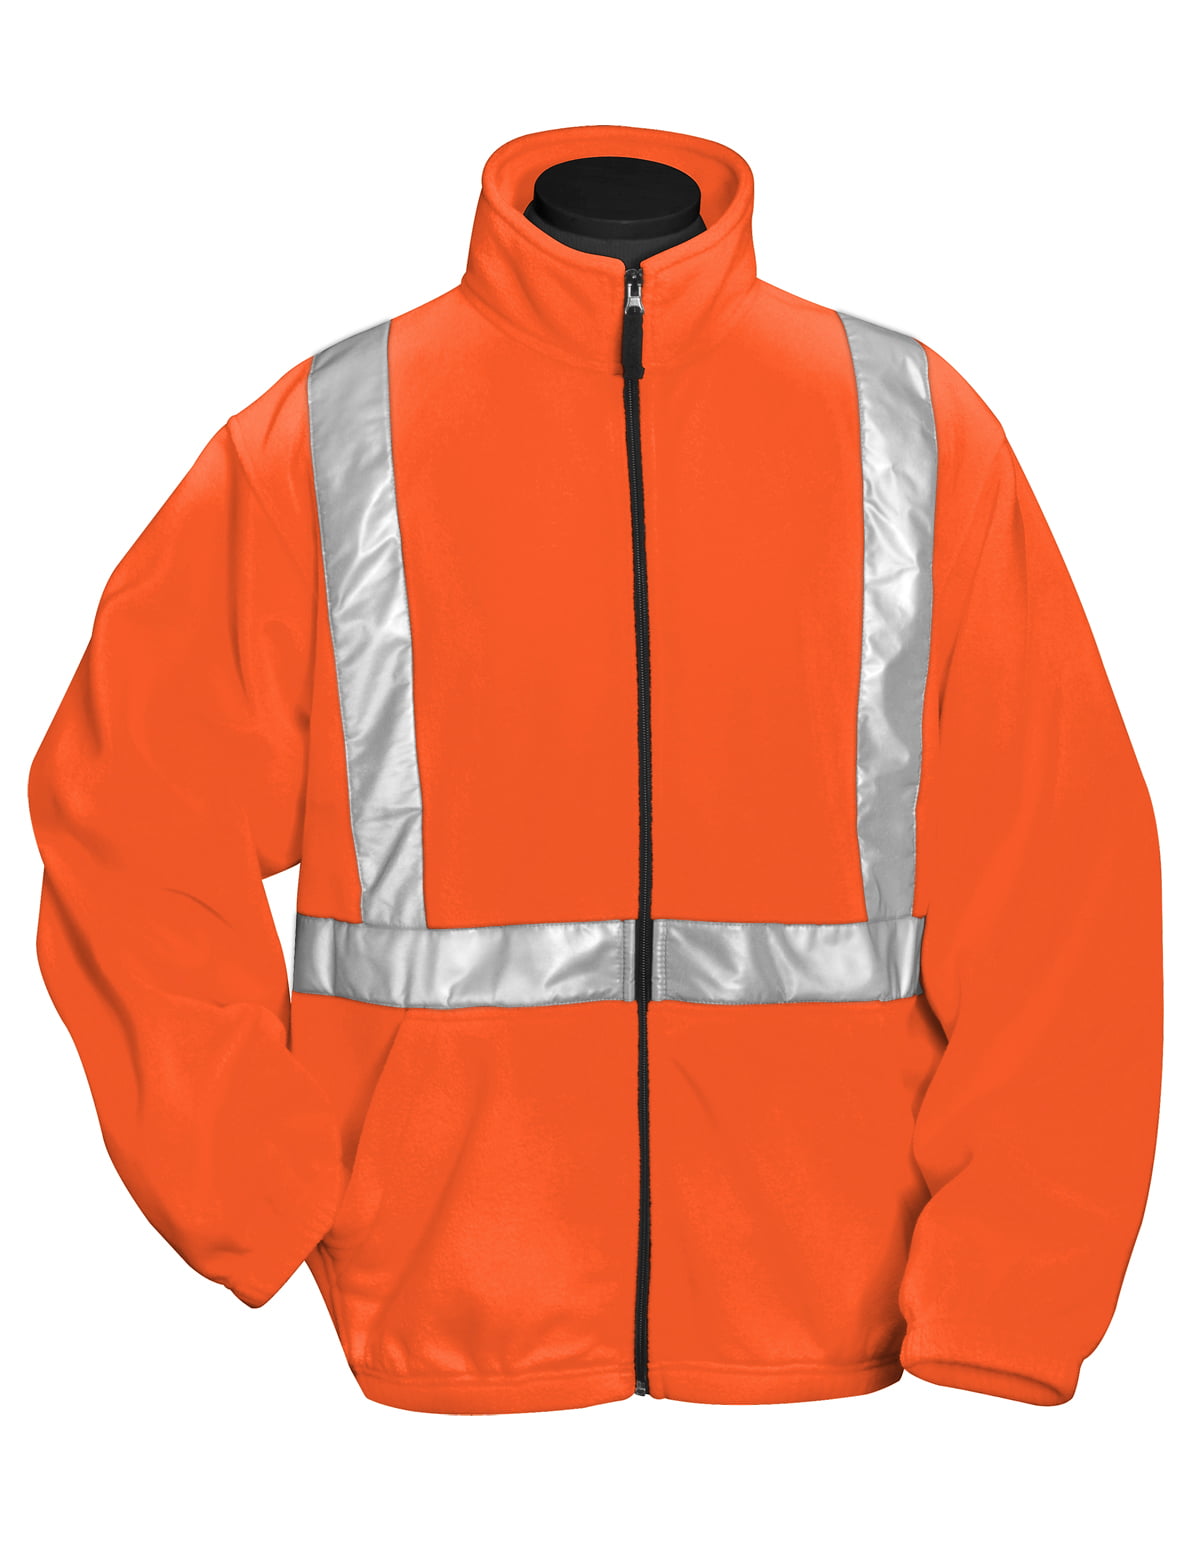 Small Orange/Navy Portwest US467ONRS Regular Fit Hi-Vis Two Tone Traffic Jacket 